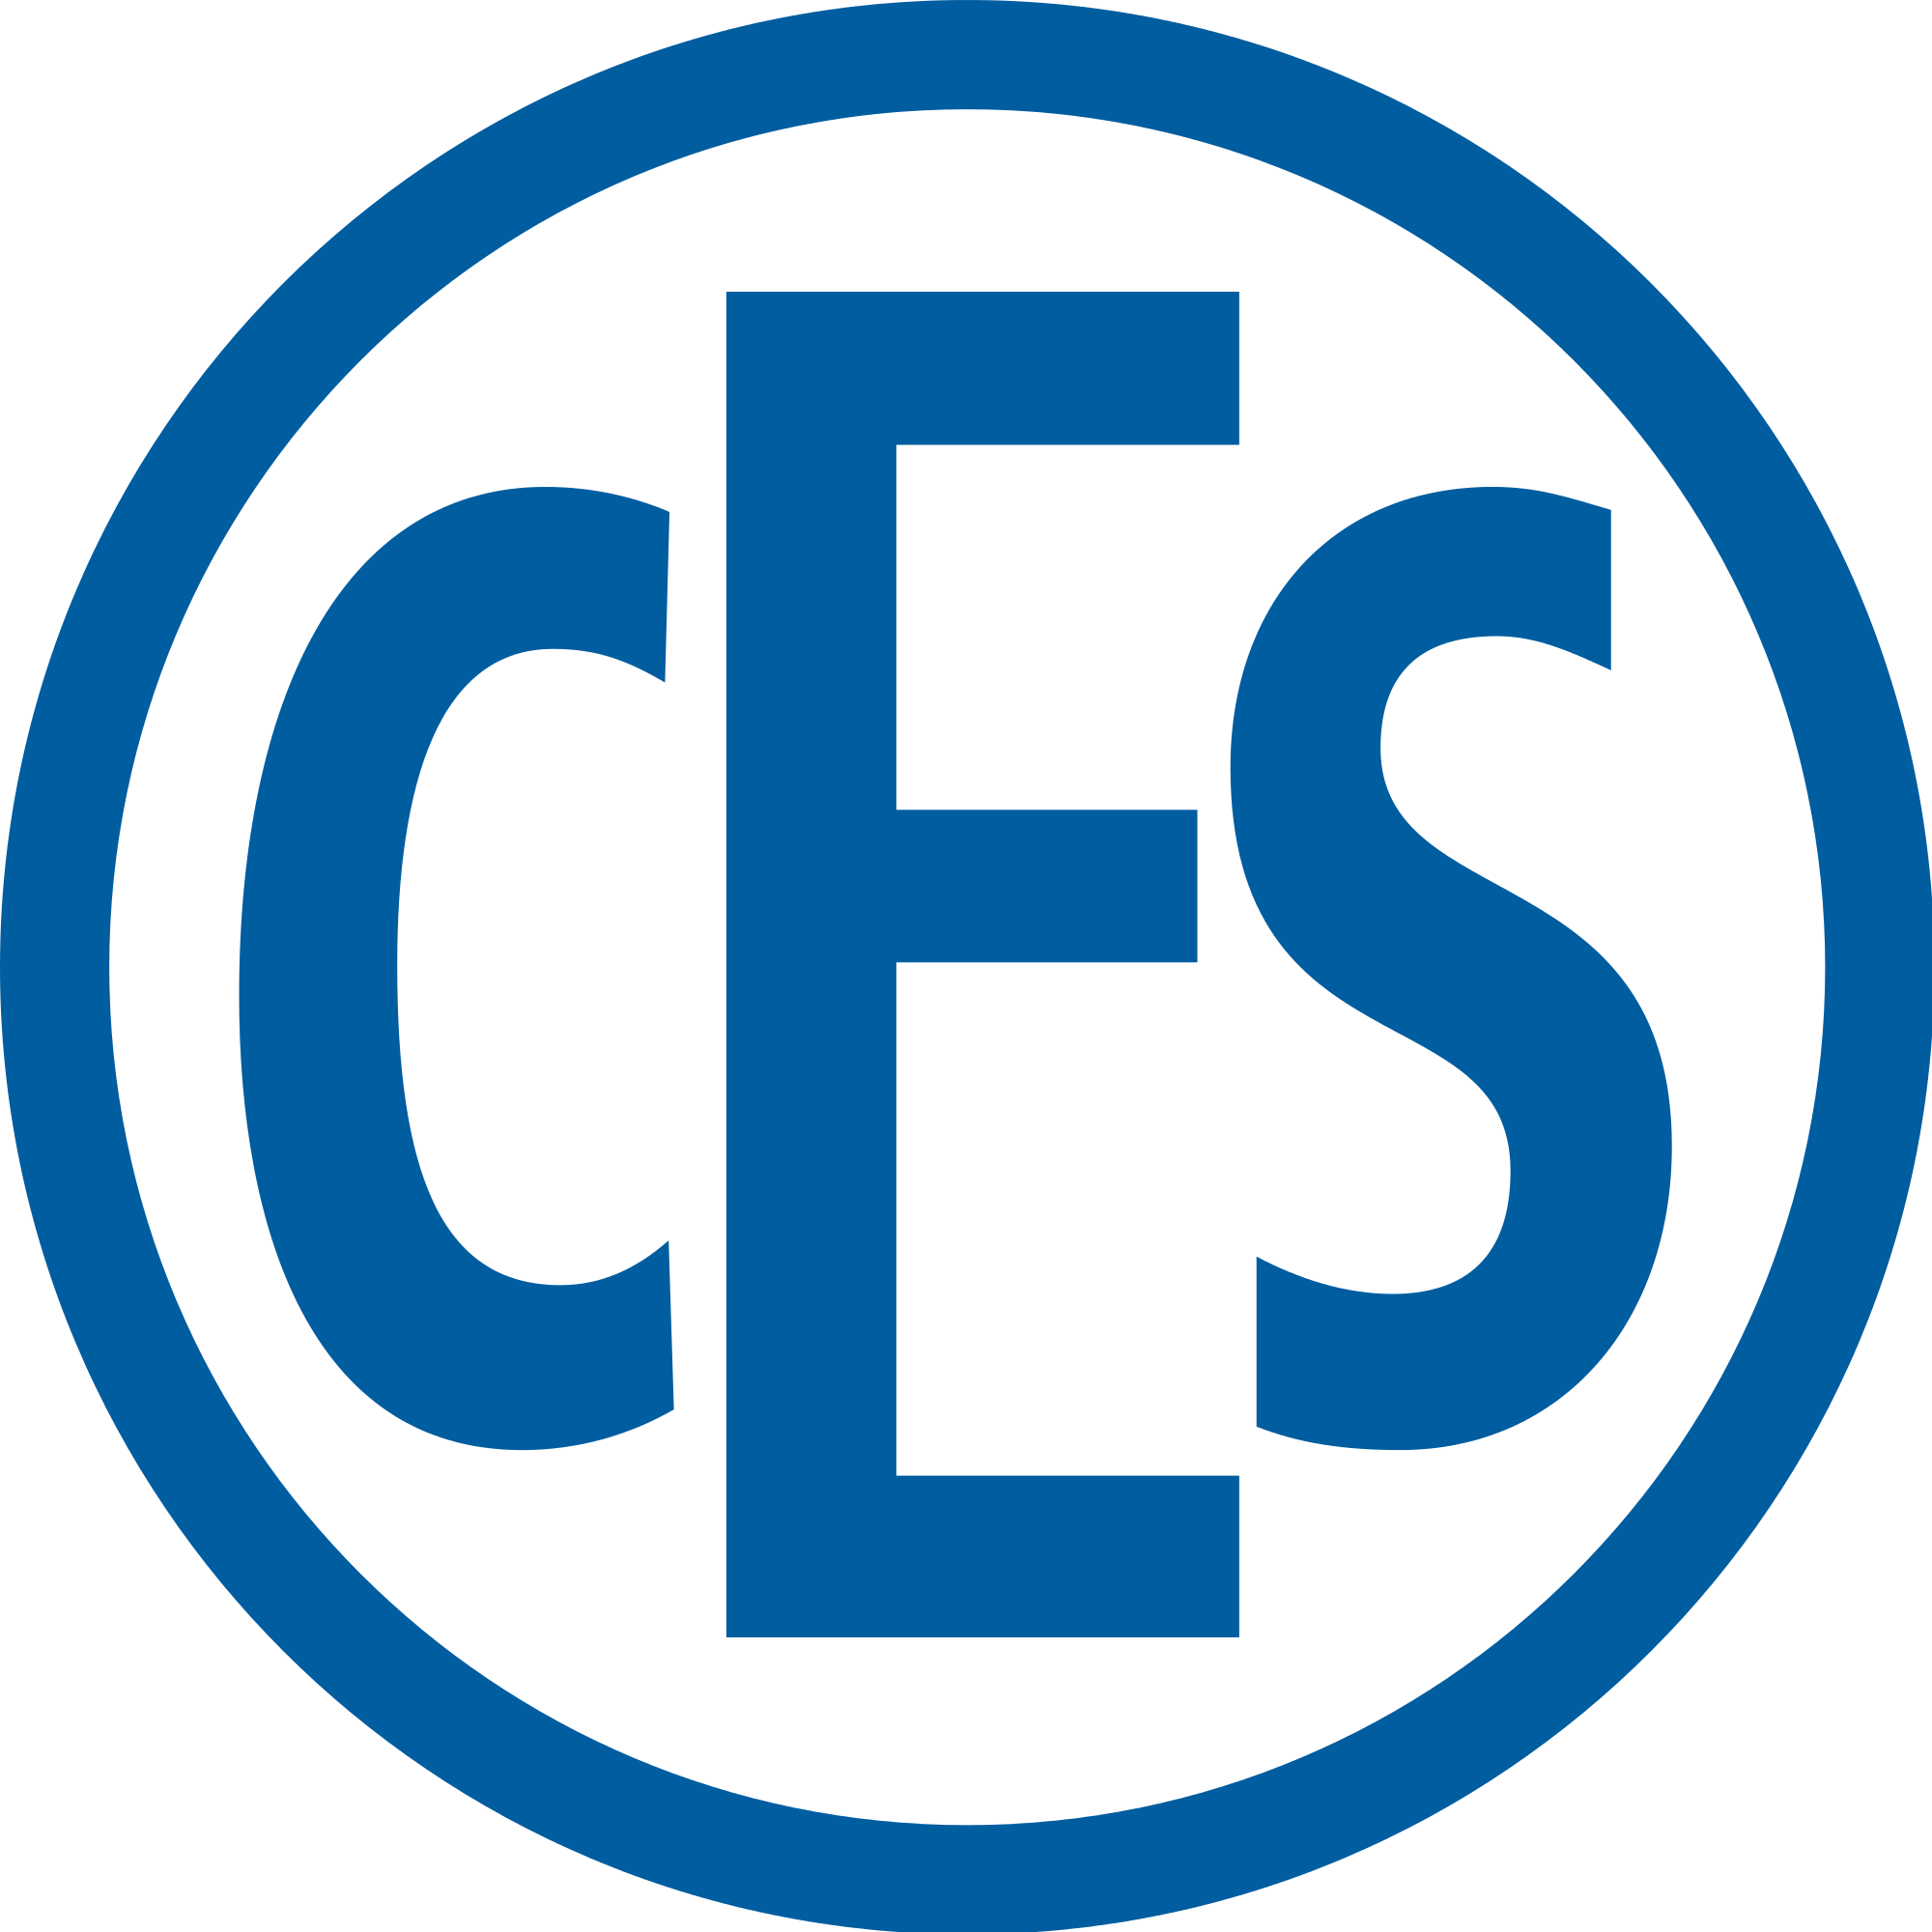 CES_Logo_2015.svg